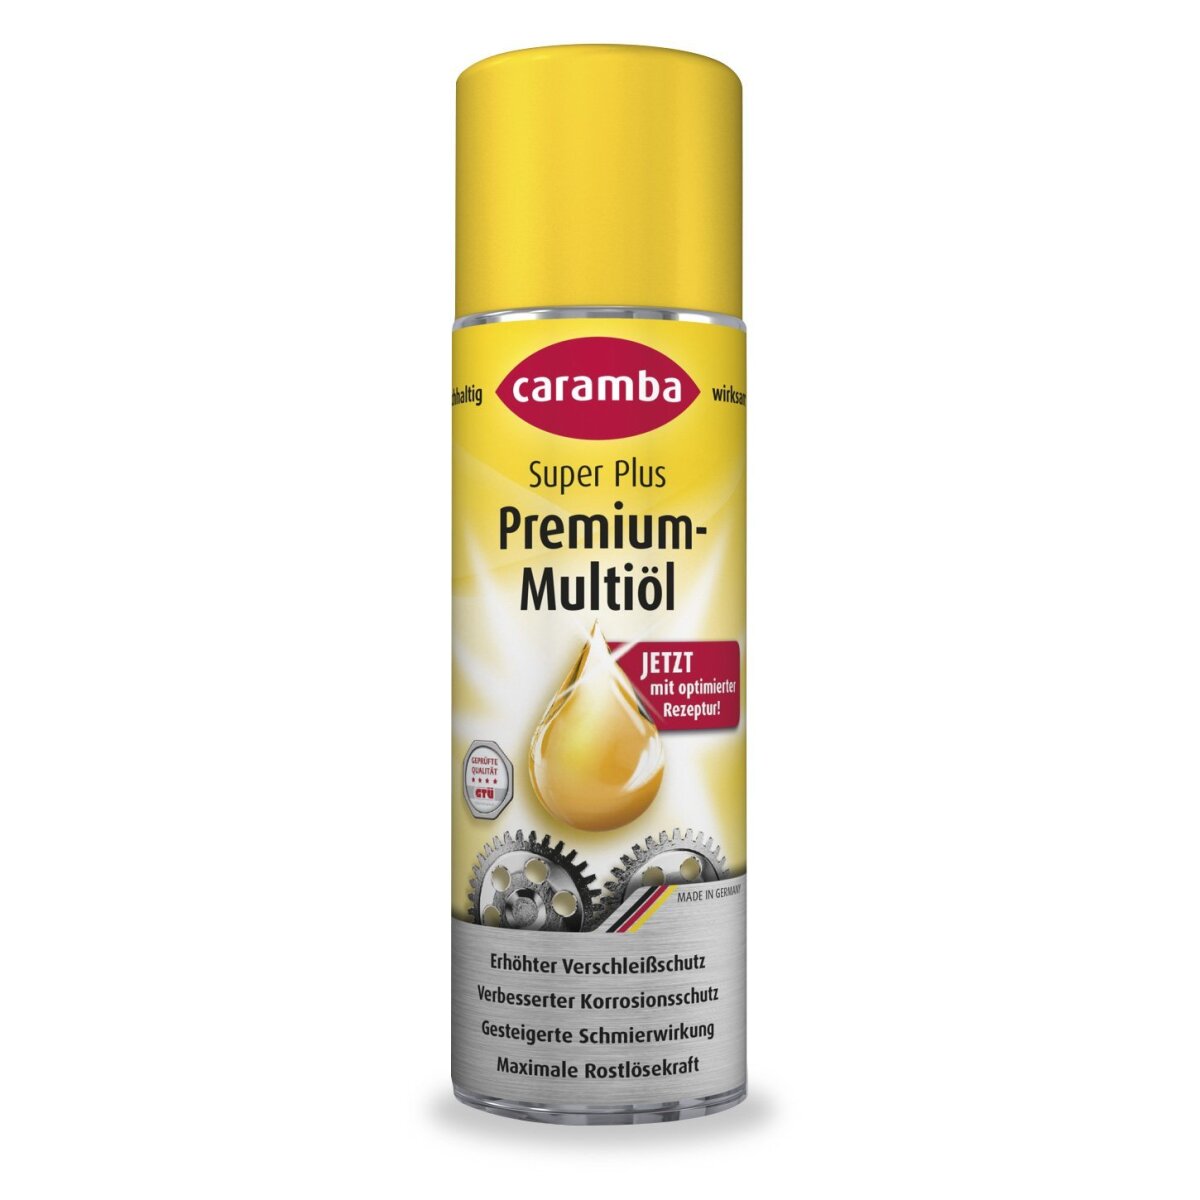 Caramba Super Plus Premium Multioil Multi Use Spray 300ml, 8,37 €